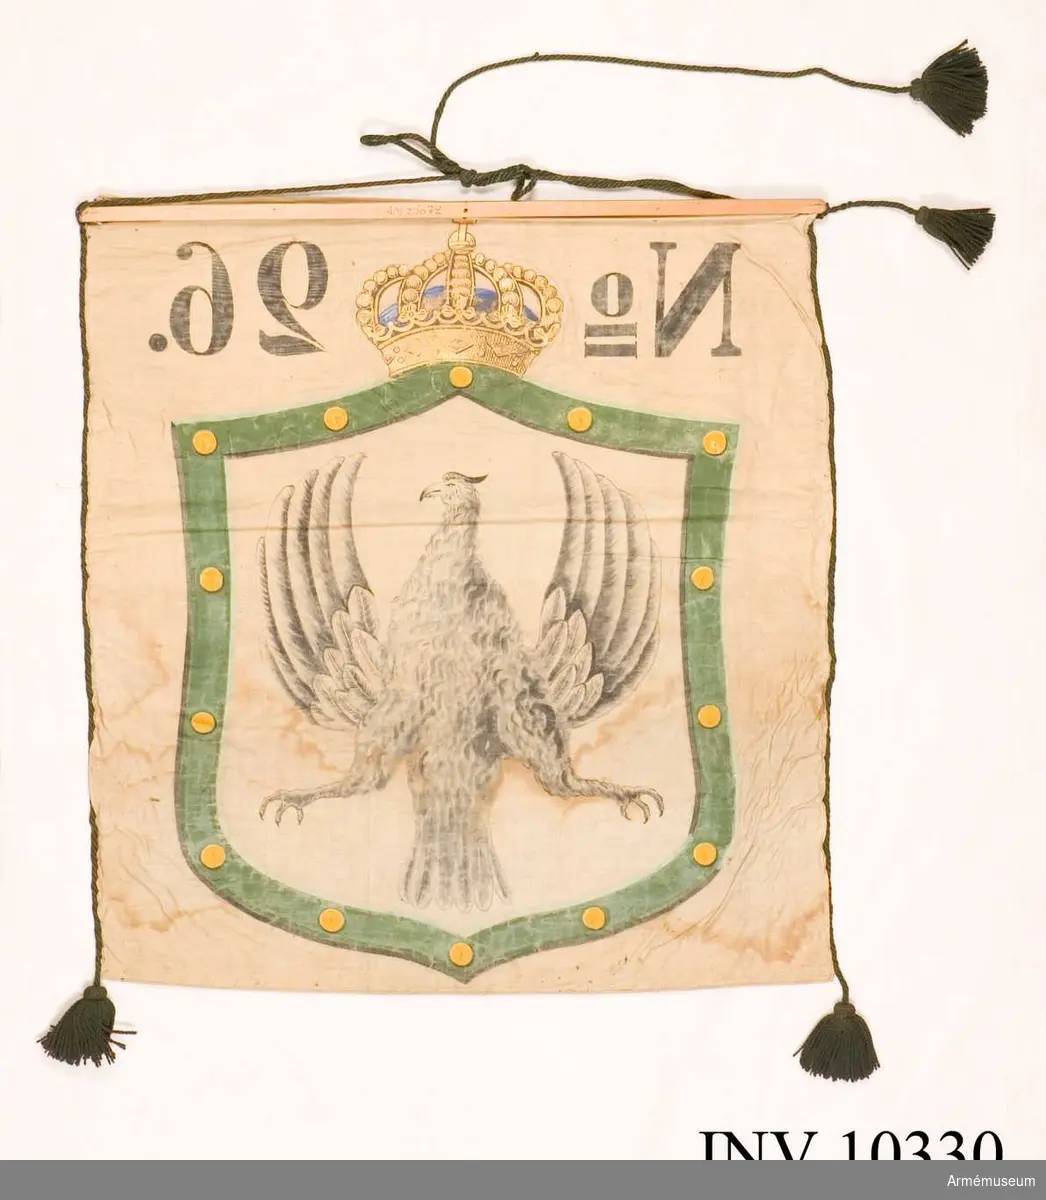 Grupp B I.

Bottentyg av vit lärft. Långsidorna är kantade med grön bomullssnodd avslutad i tofsar. Två tofsar på den ena sidan, en på den andra. Målad sköld krönt med kunglig krona och märkt No   26. Värmlands vapen i skölden. Standaret är fastspikat vid en träribba.1948-12-17 ink. 481, utdrag ur brev från kapten O Oxehufvud: "Den förra är målad af d.v. löjtnanten Herman Byström och användes vid officerskårens bal 1882 för att bjuda cottillonsdekorationer åt damerna af en liten hornblåsare" ...